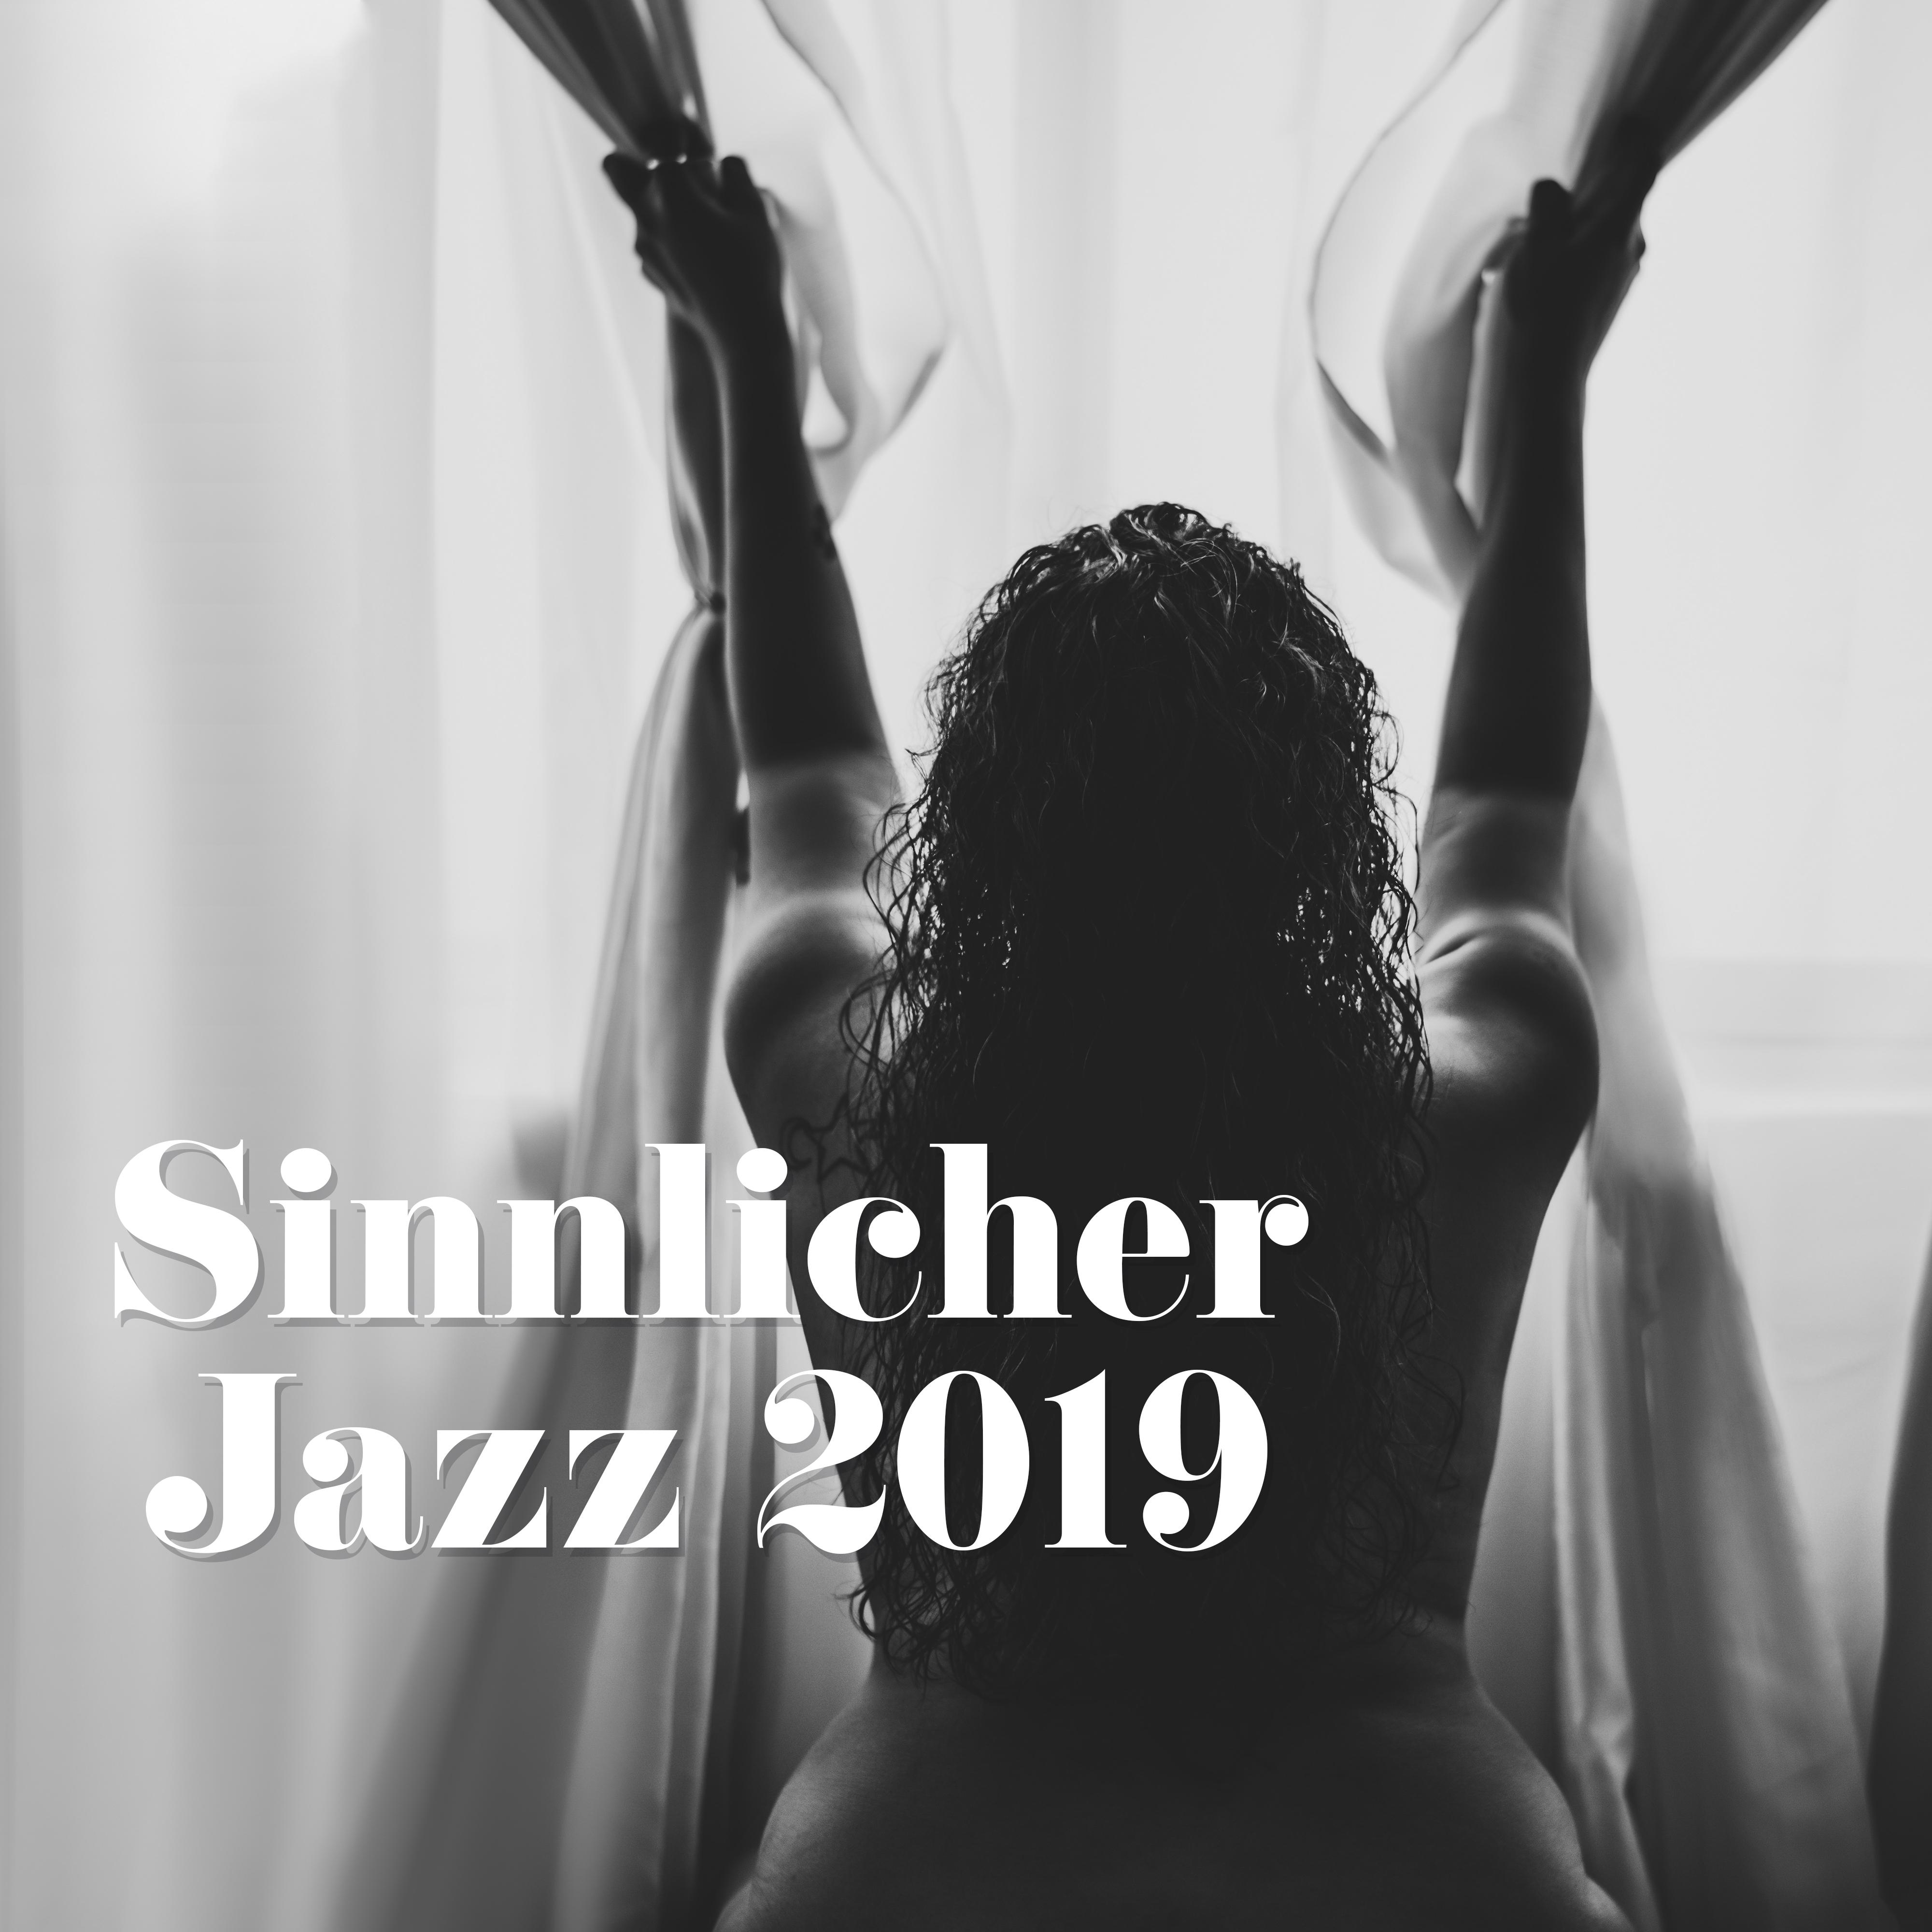 Sinnlicher Jazz 2019 – Romantische Musik